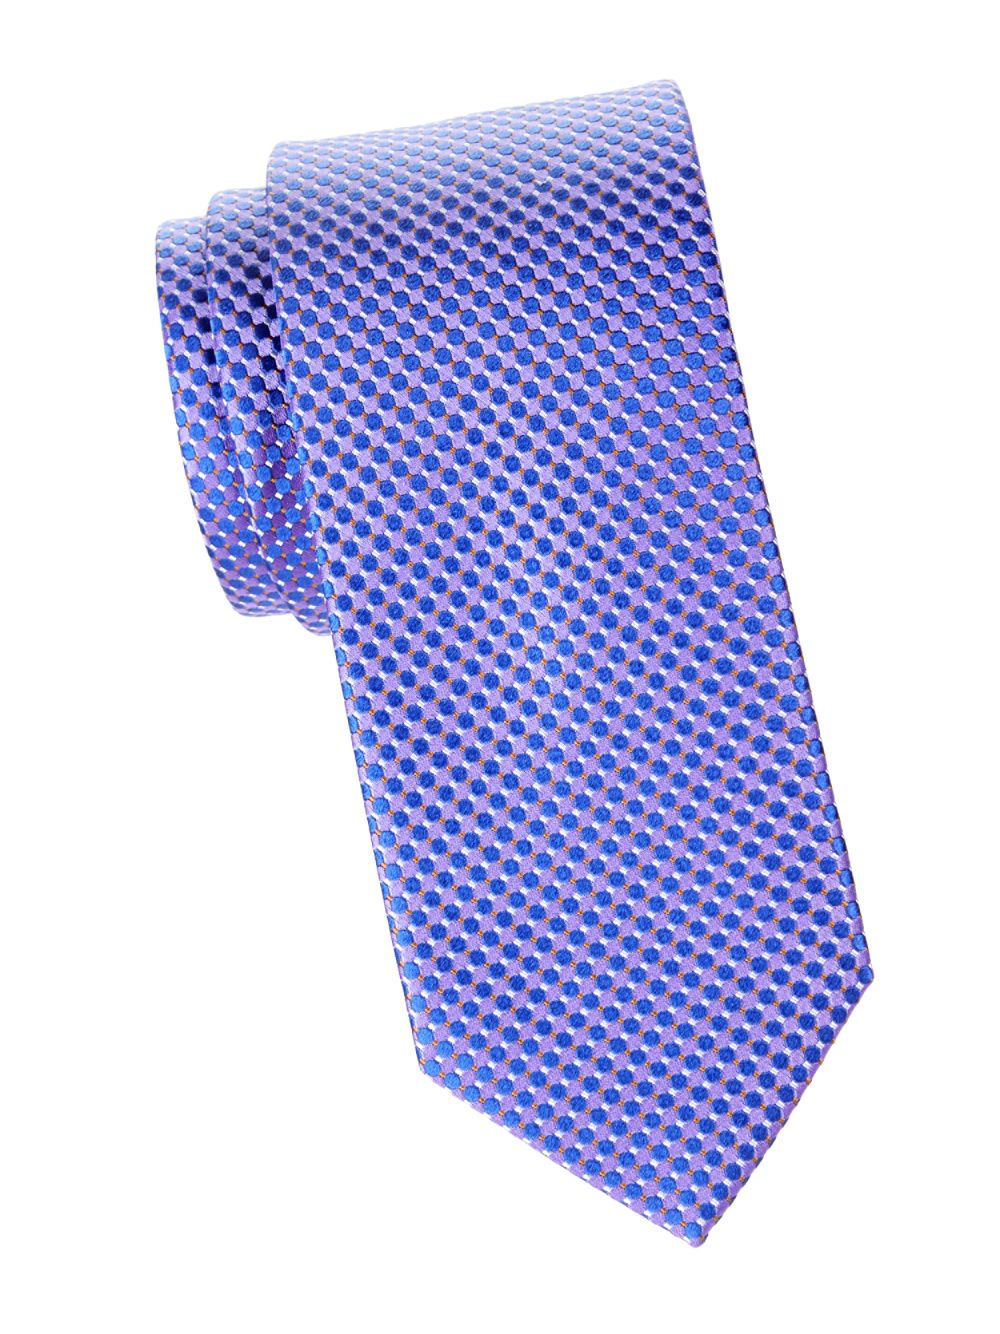 Шелковый галстук с мелкими кругами Eton, фиолетовый